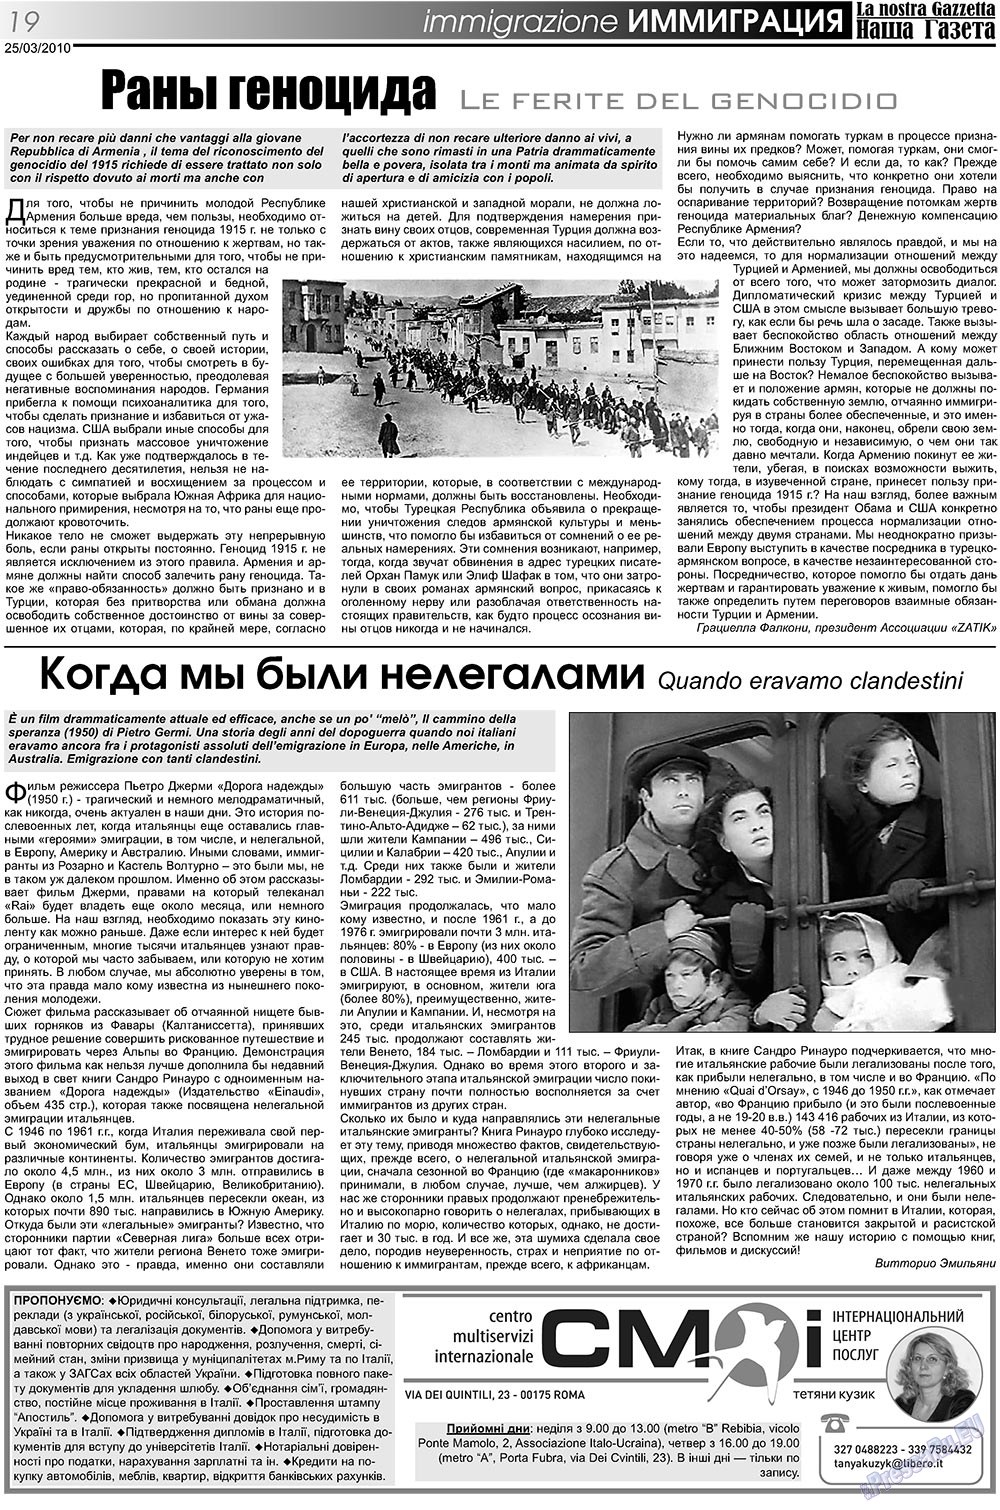 Наша Газета Италия, газета. 2010 №105 стр.19